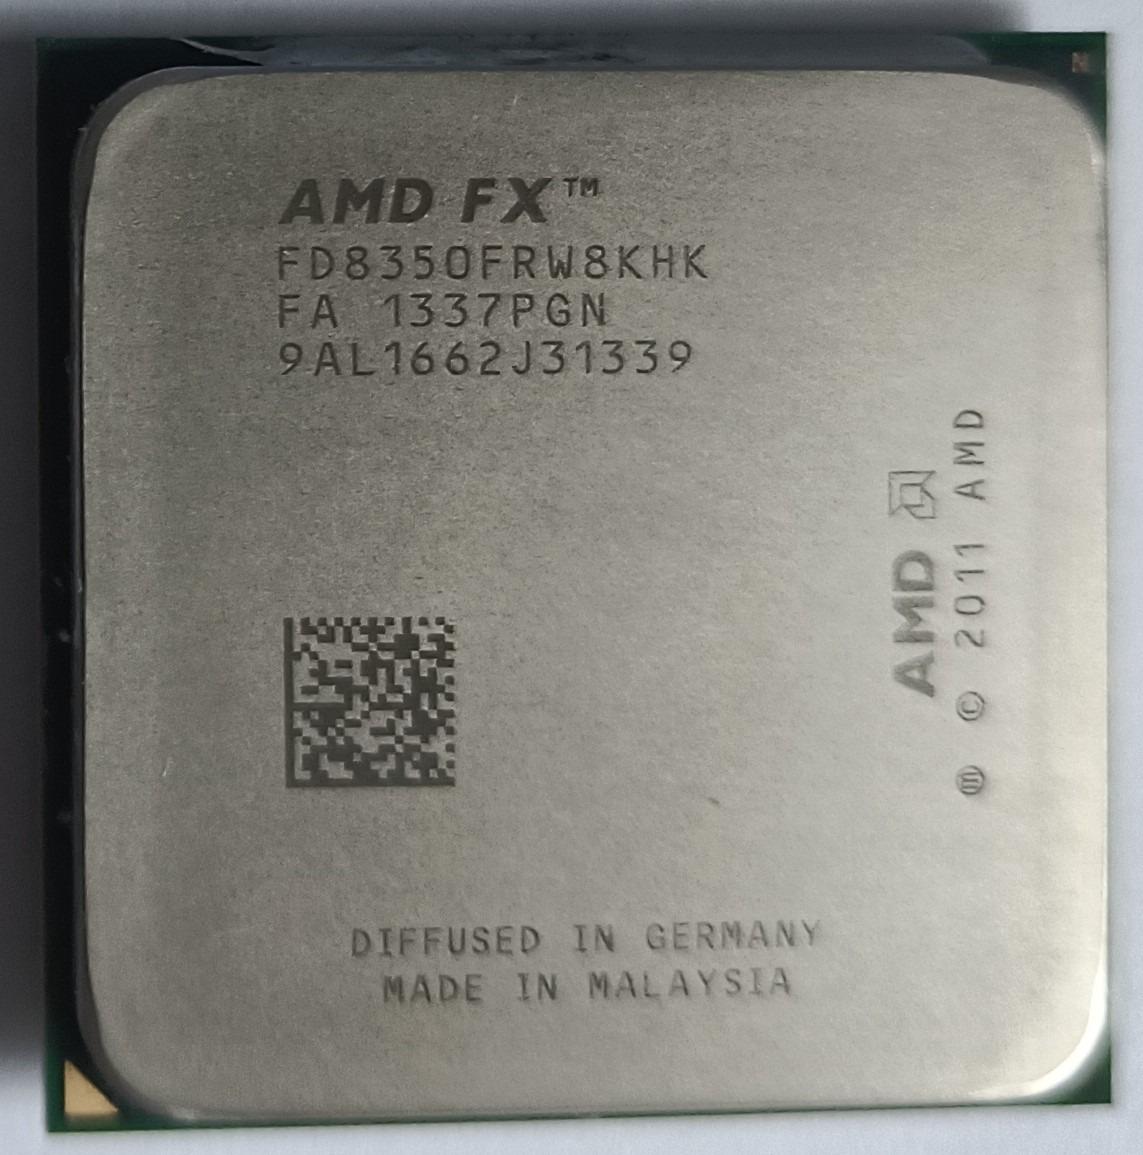 AMD procesor FX-8350 Vishera, 4.20 GHz Turbo, socket AM3+, otestovaný - Počítače a hry